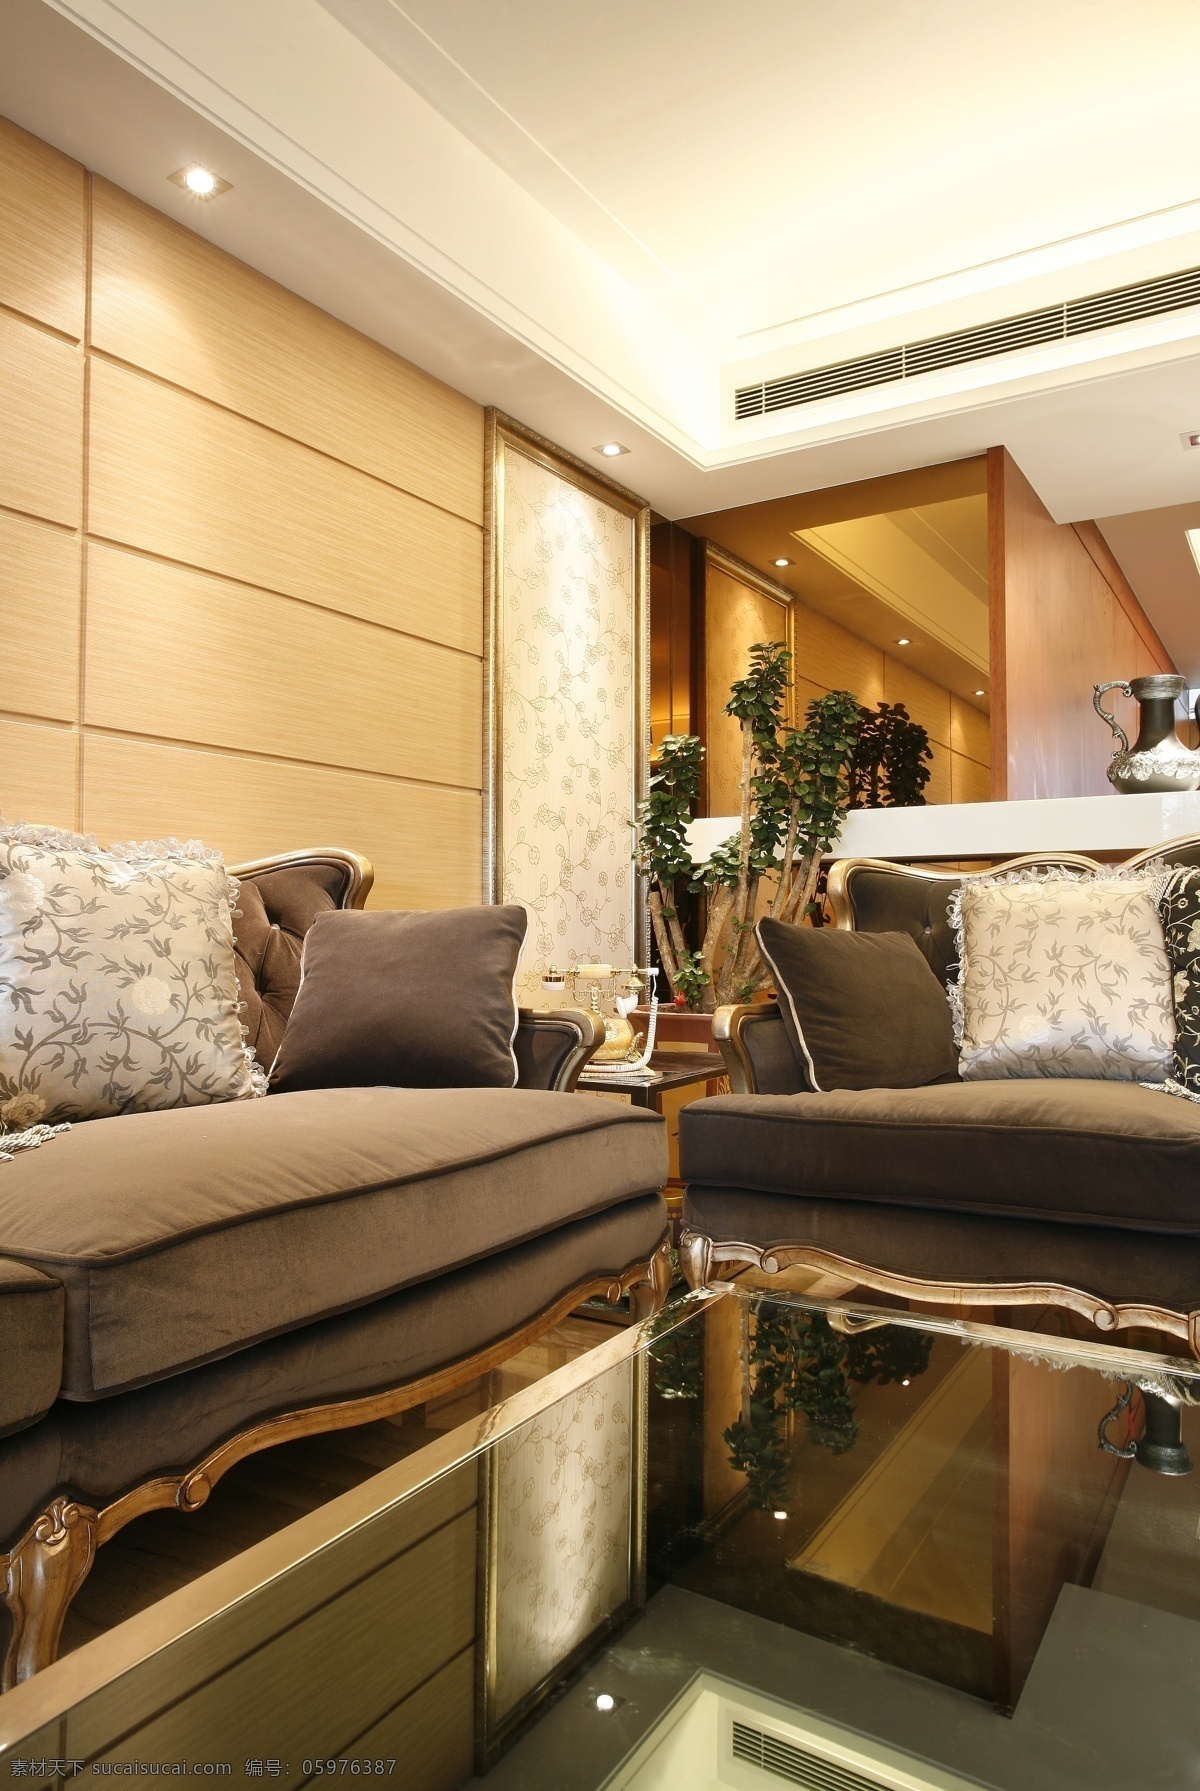 现代 客厅 后现代 建筑园林 欧式 沙发 奢华 室内摄影 现代客厅 家居装饰素材